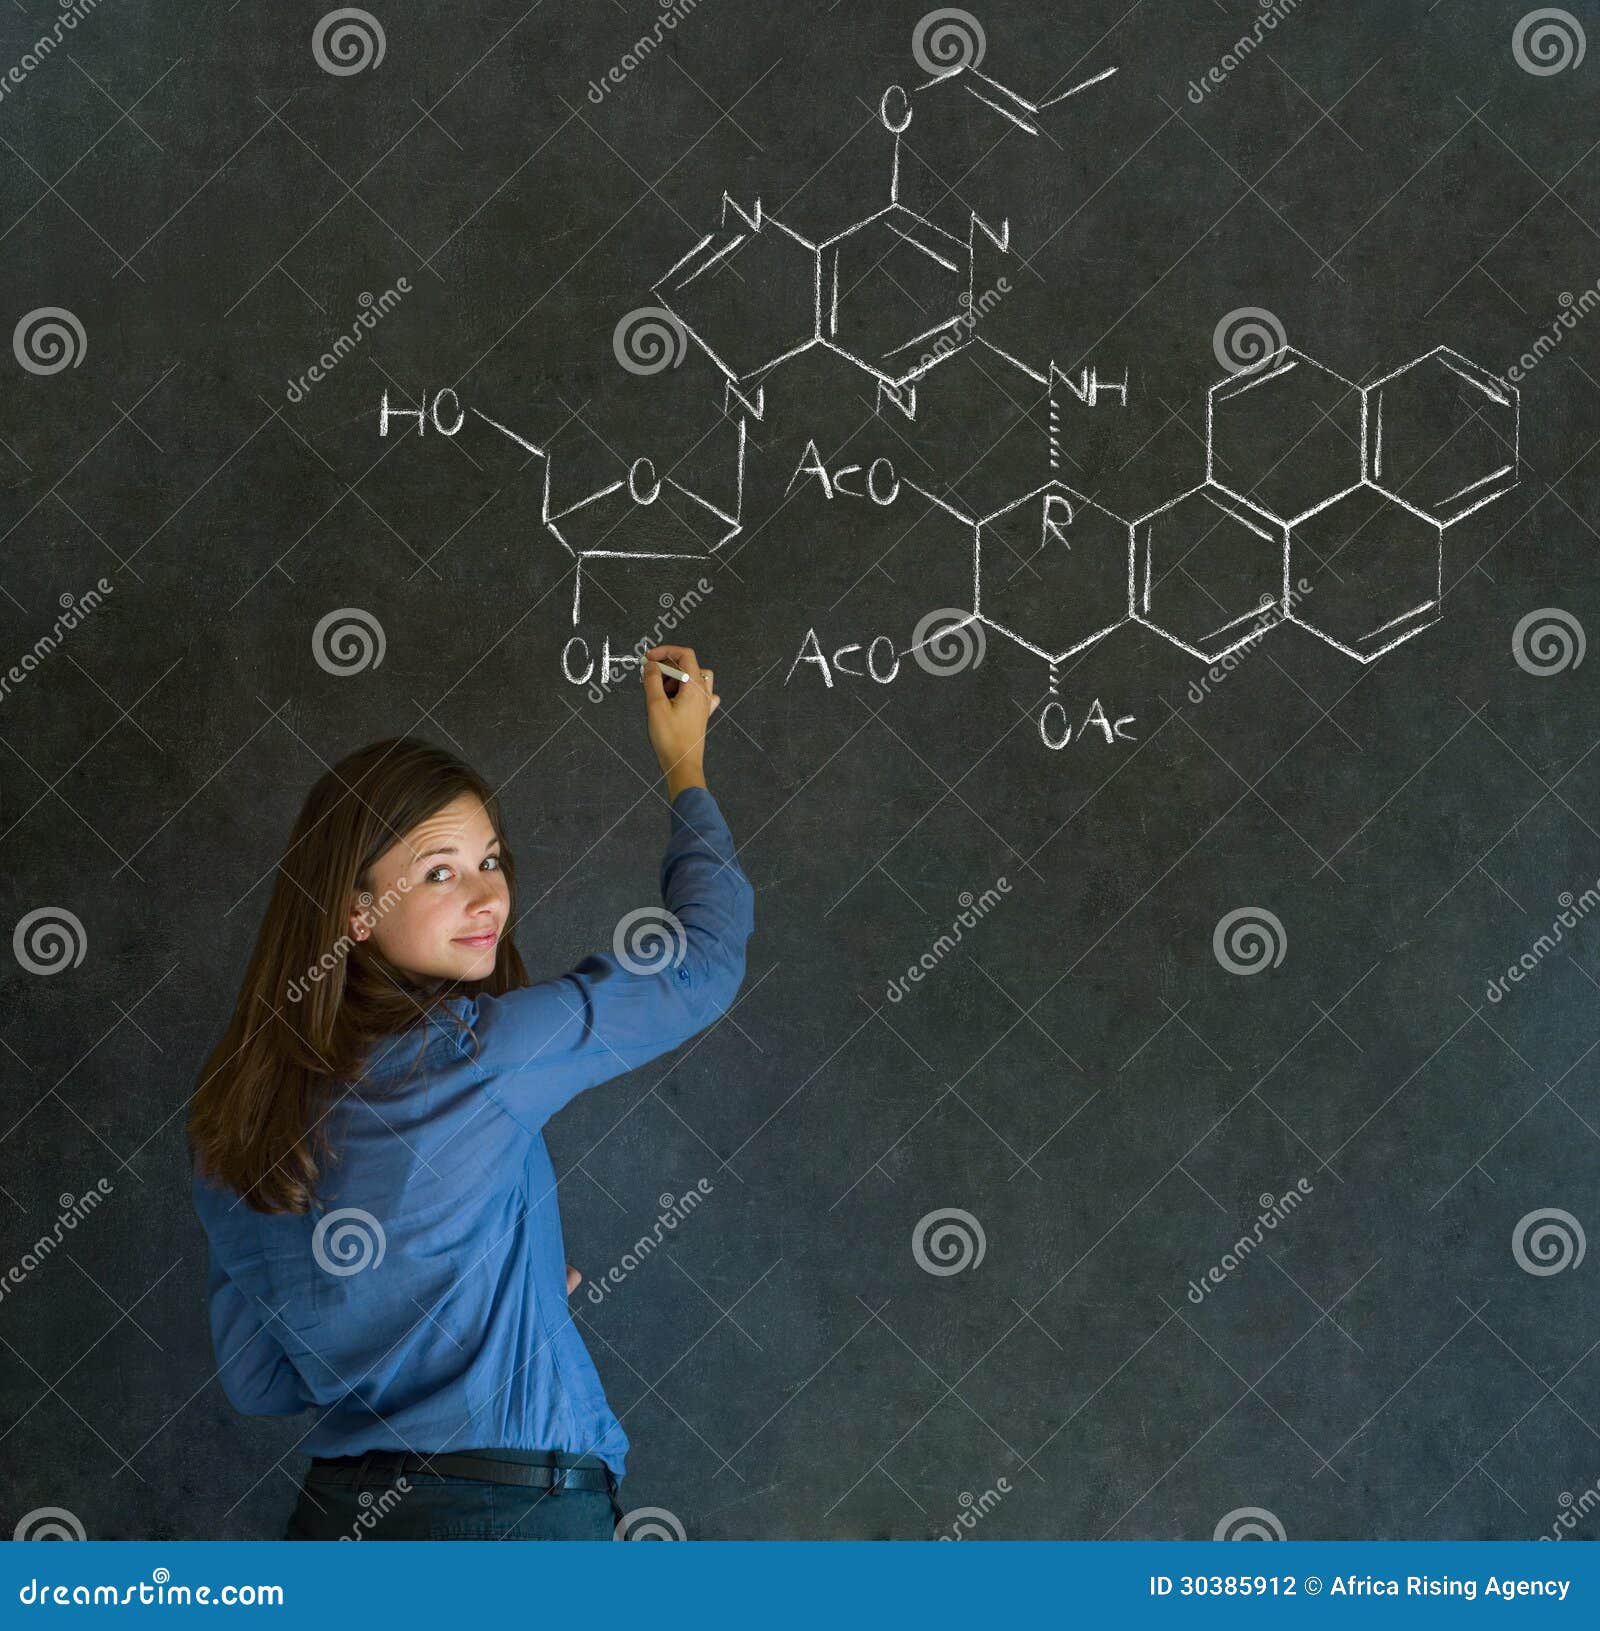 Учитель природоведения планирует. Учитель по химии. Химические формулы на доске мелом. Формула женщины. Картинки по химии мелом.